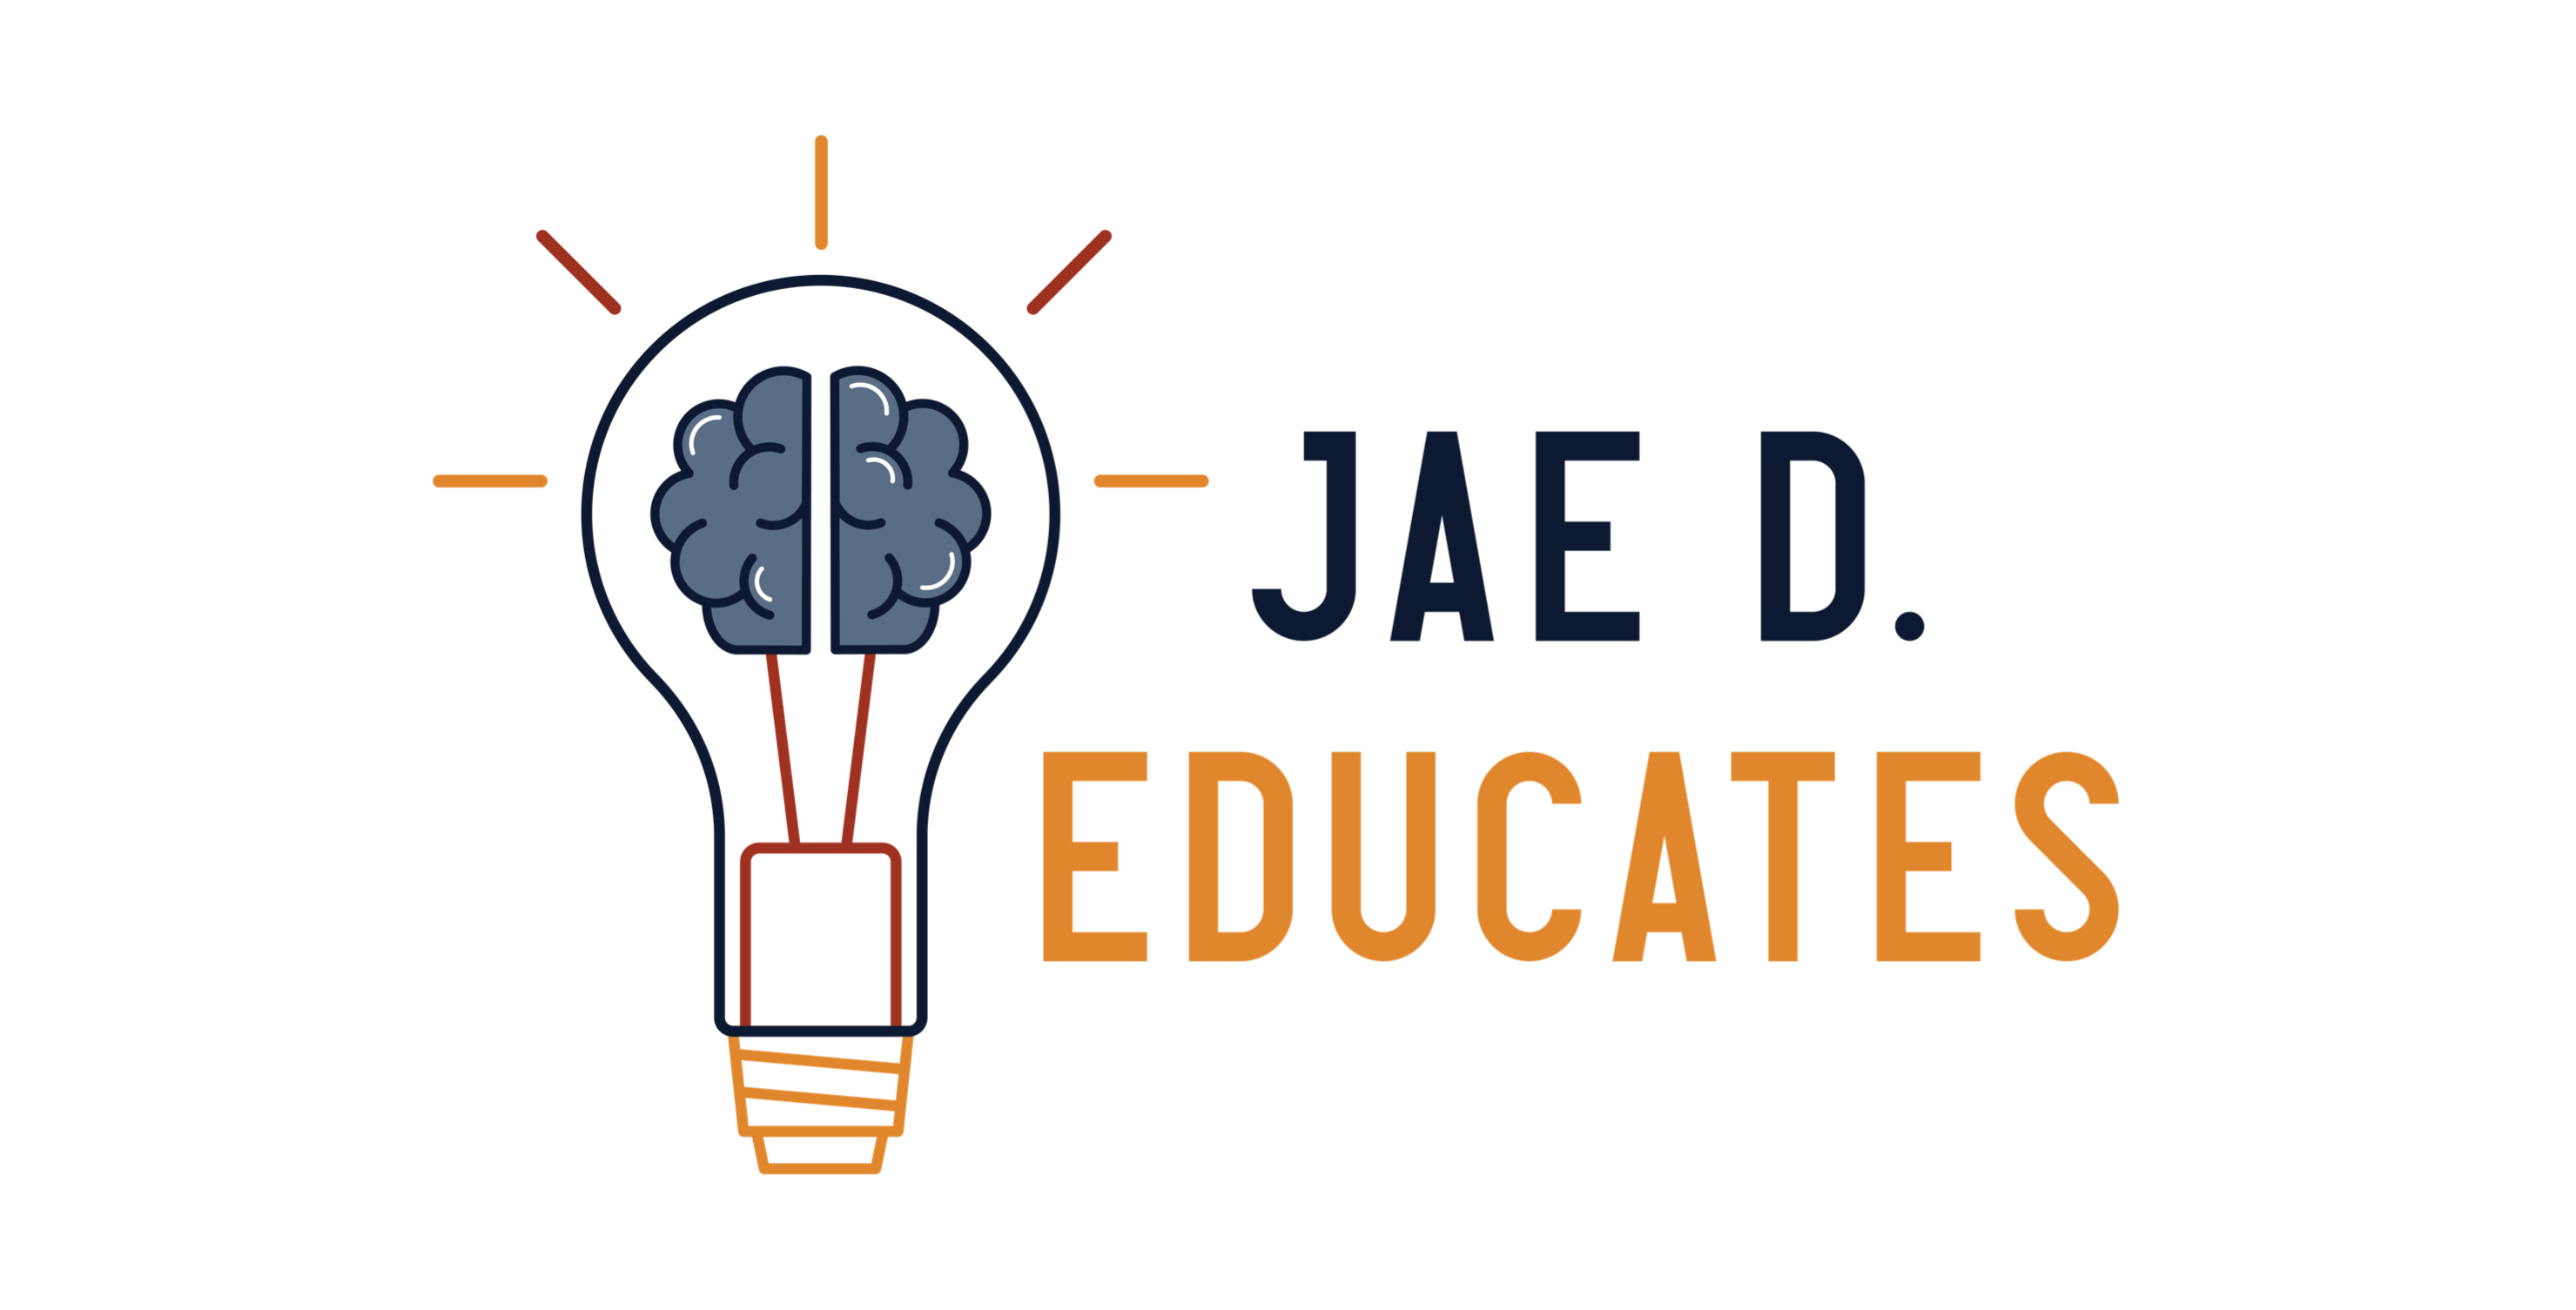 Jae D. Educates